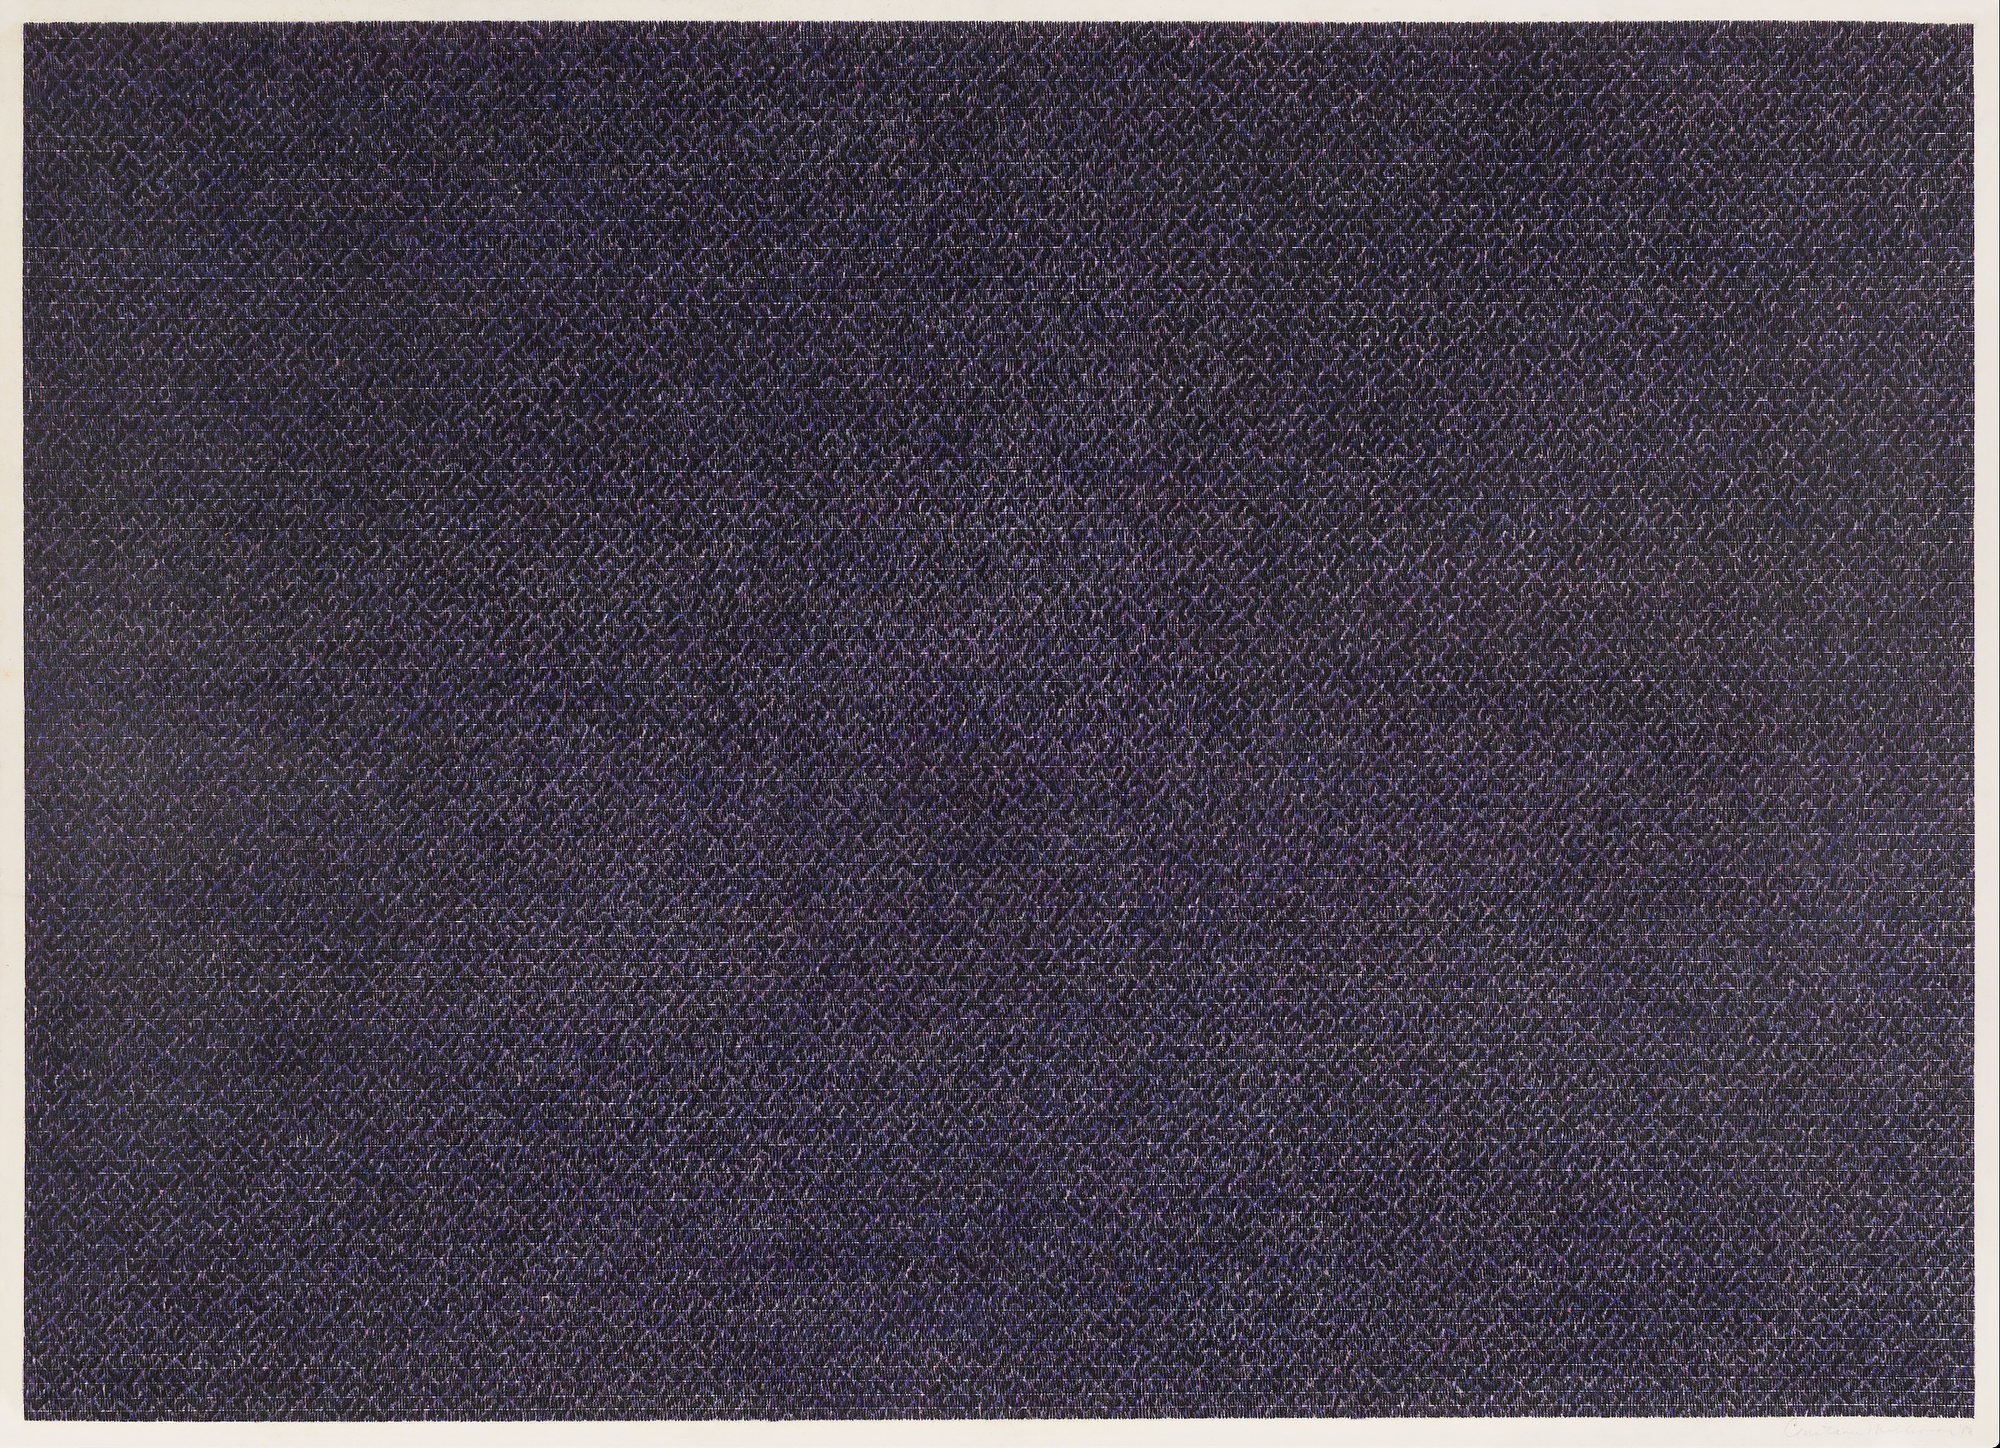 康斯坦斯-马林森 - 无题#11 - 纸上彩色铅笔 - 26 x 36英寸。